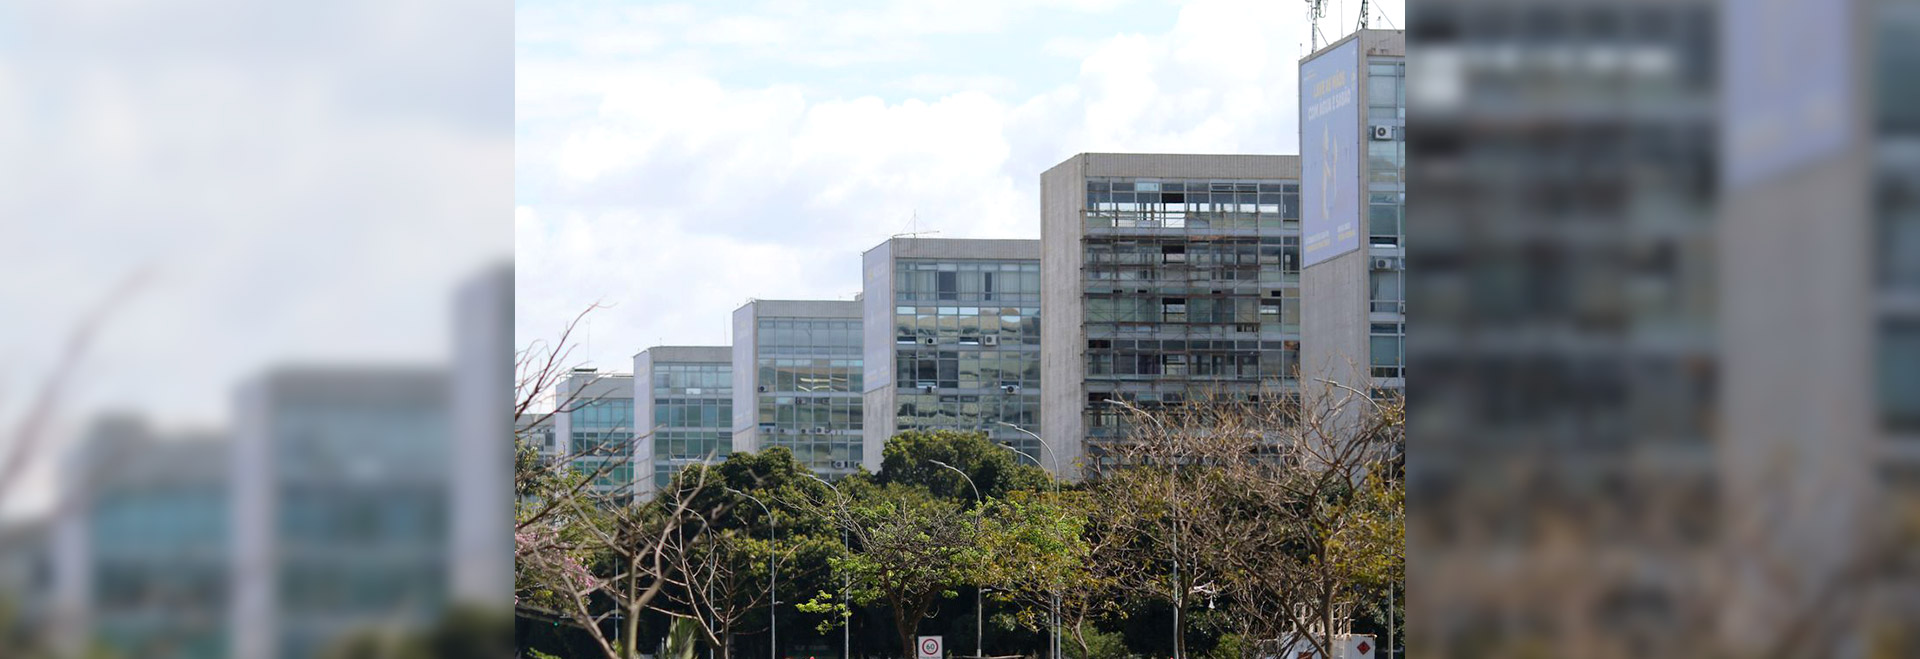 Esplanada dos Ministérios em Brasília; cinco profissionais que têm ou tiveram uma trajetória consolidada na Universidade irão compor os primeiros escalões do governo